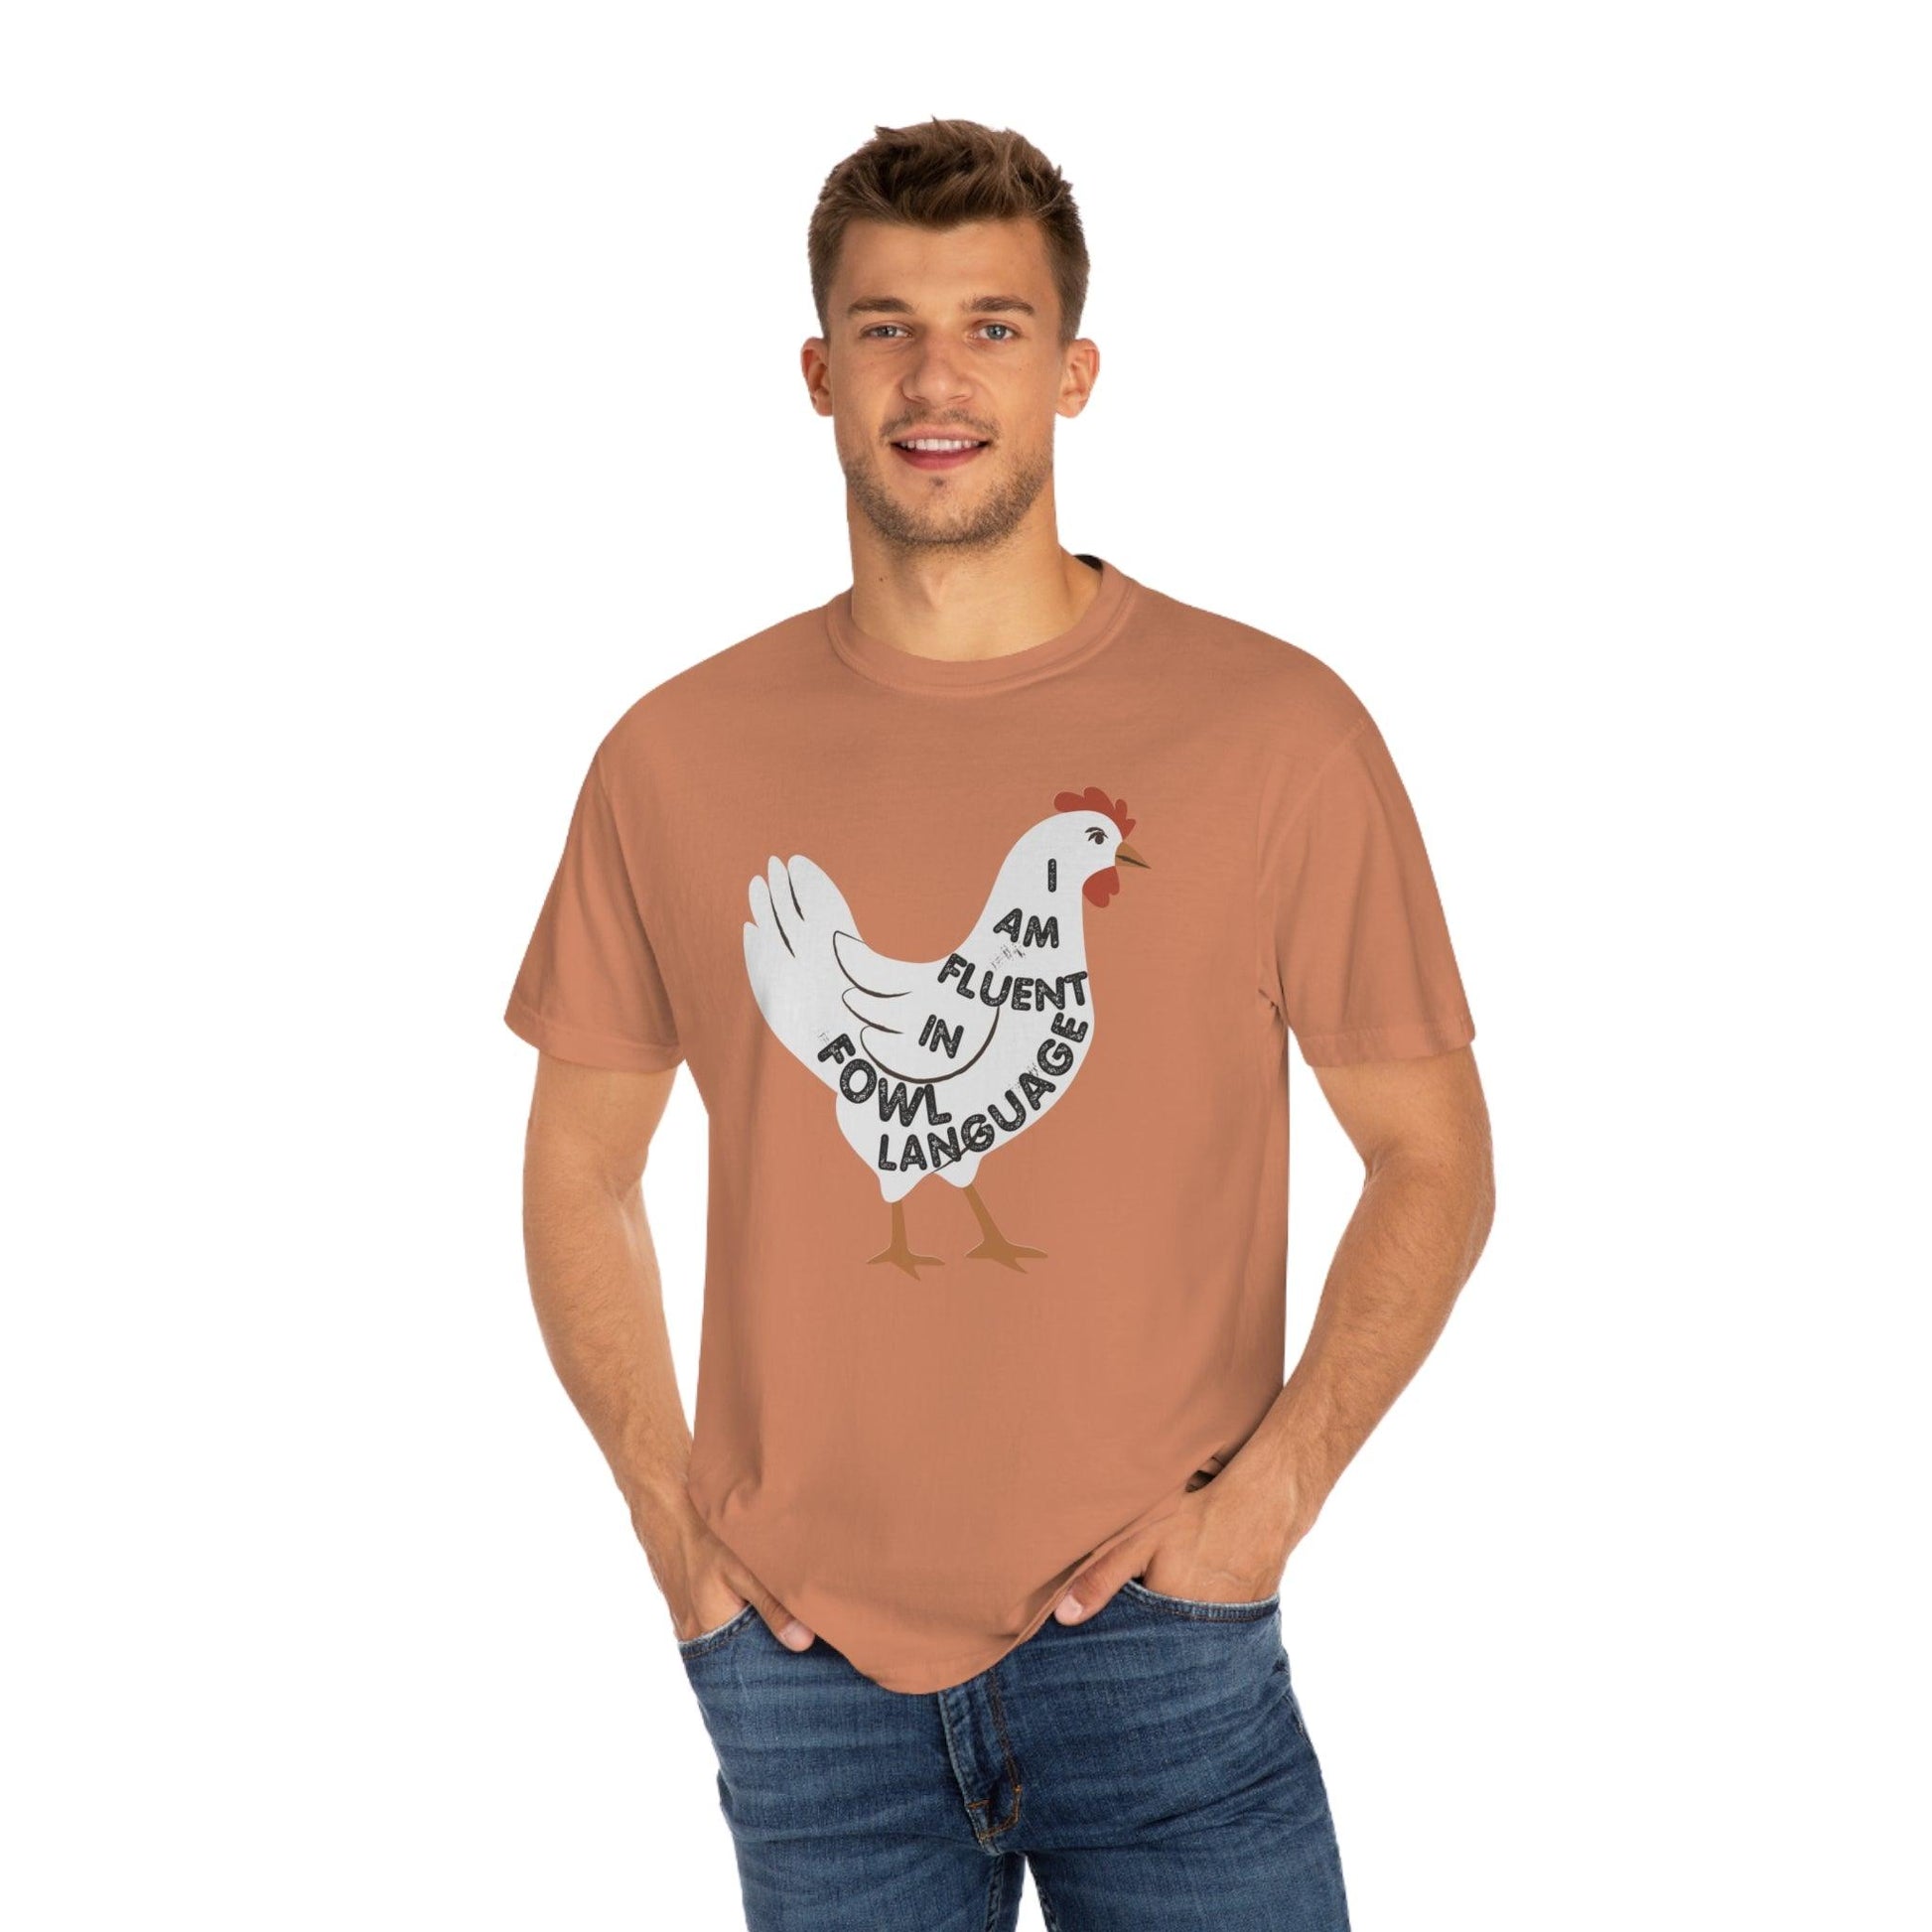 Chicken Shirt Chicken Tee Chicken Owner Gift - Gift For Chicken Lover gift, Fluent in Fowl Language shirt - Giftsmojo